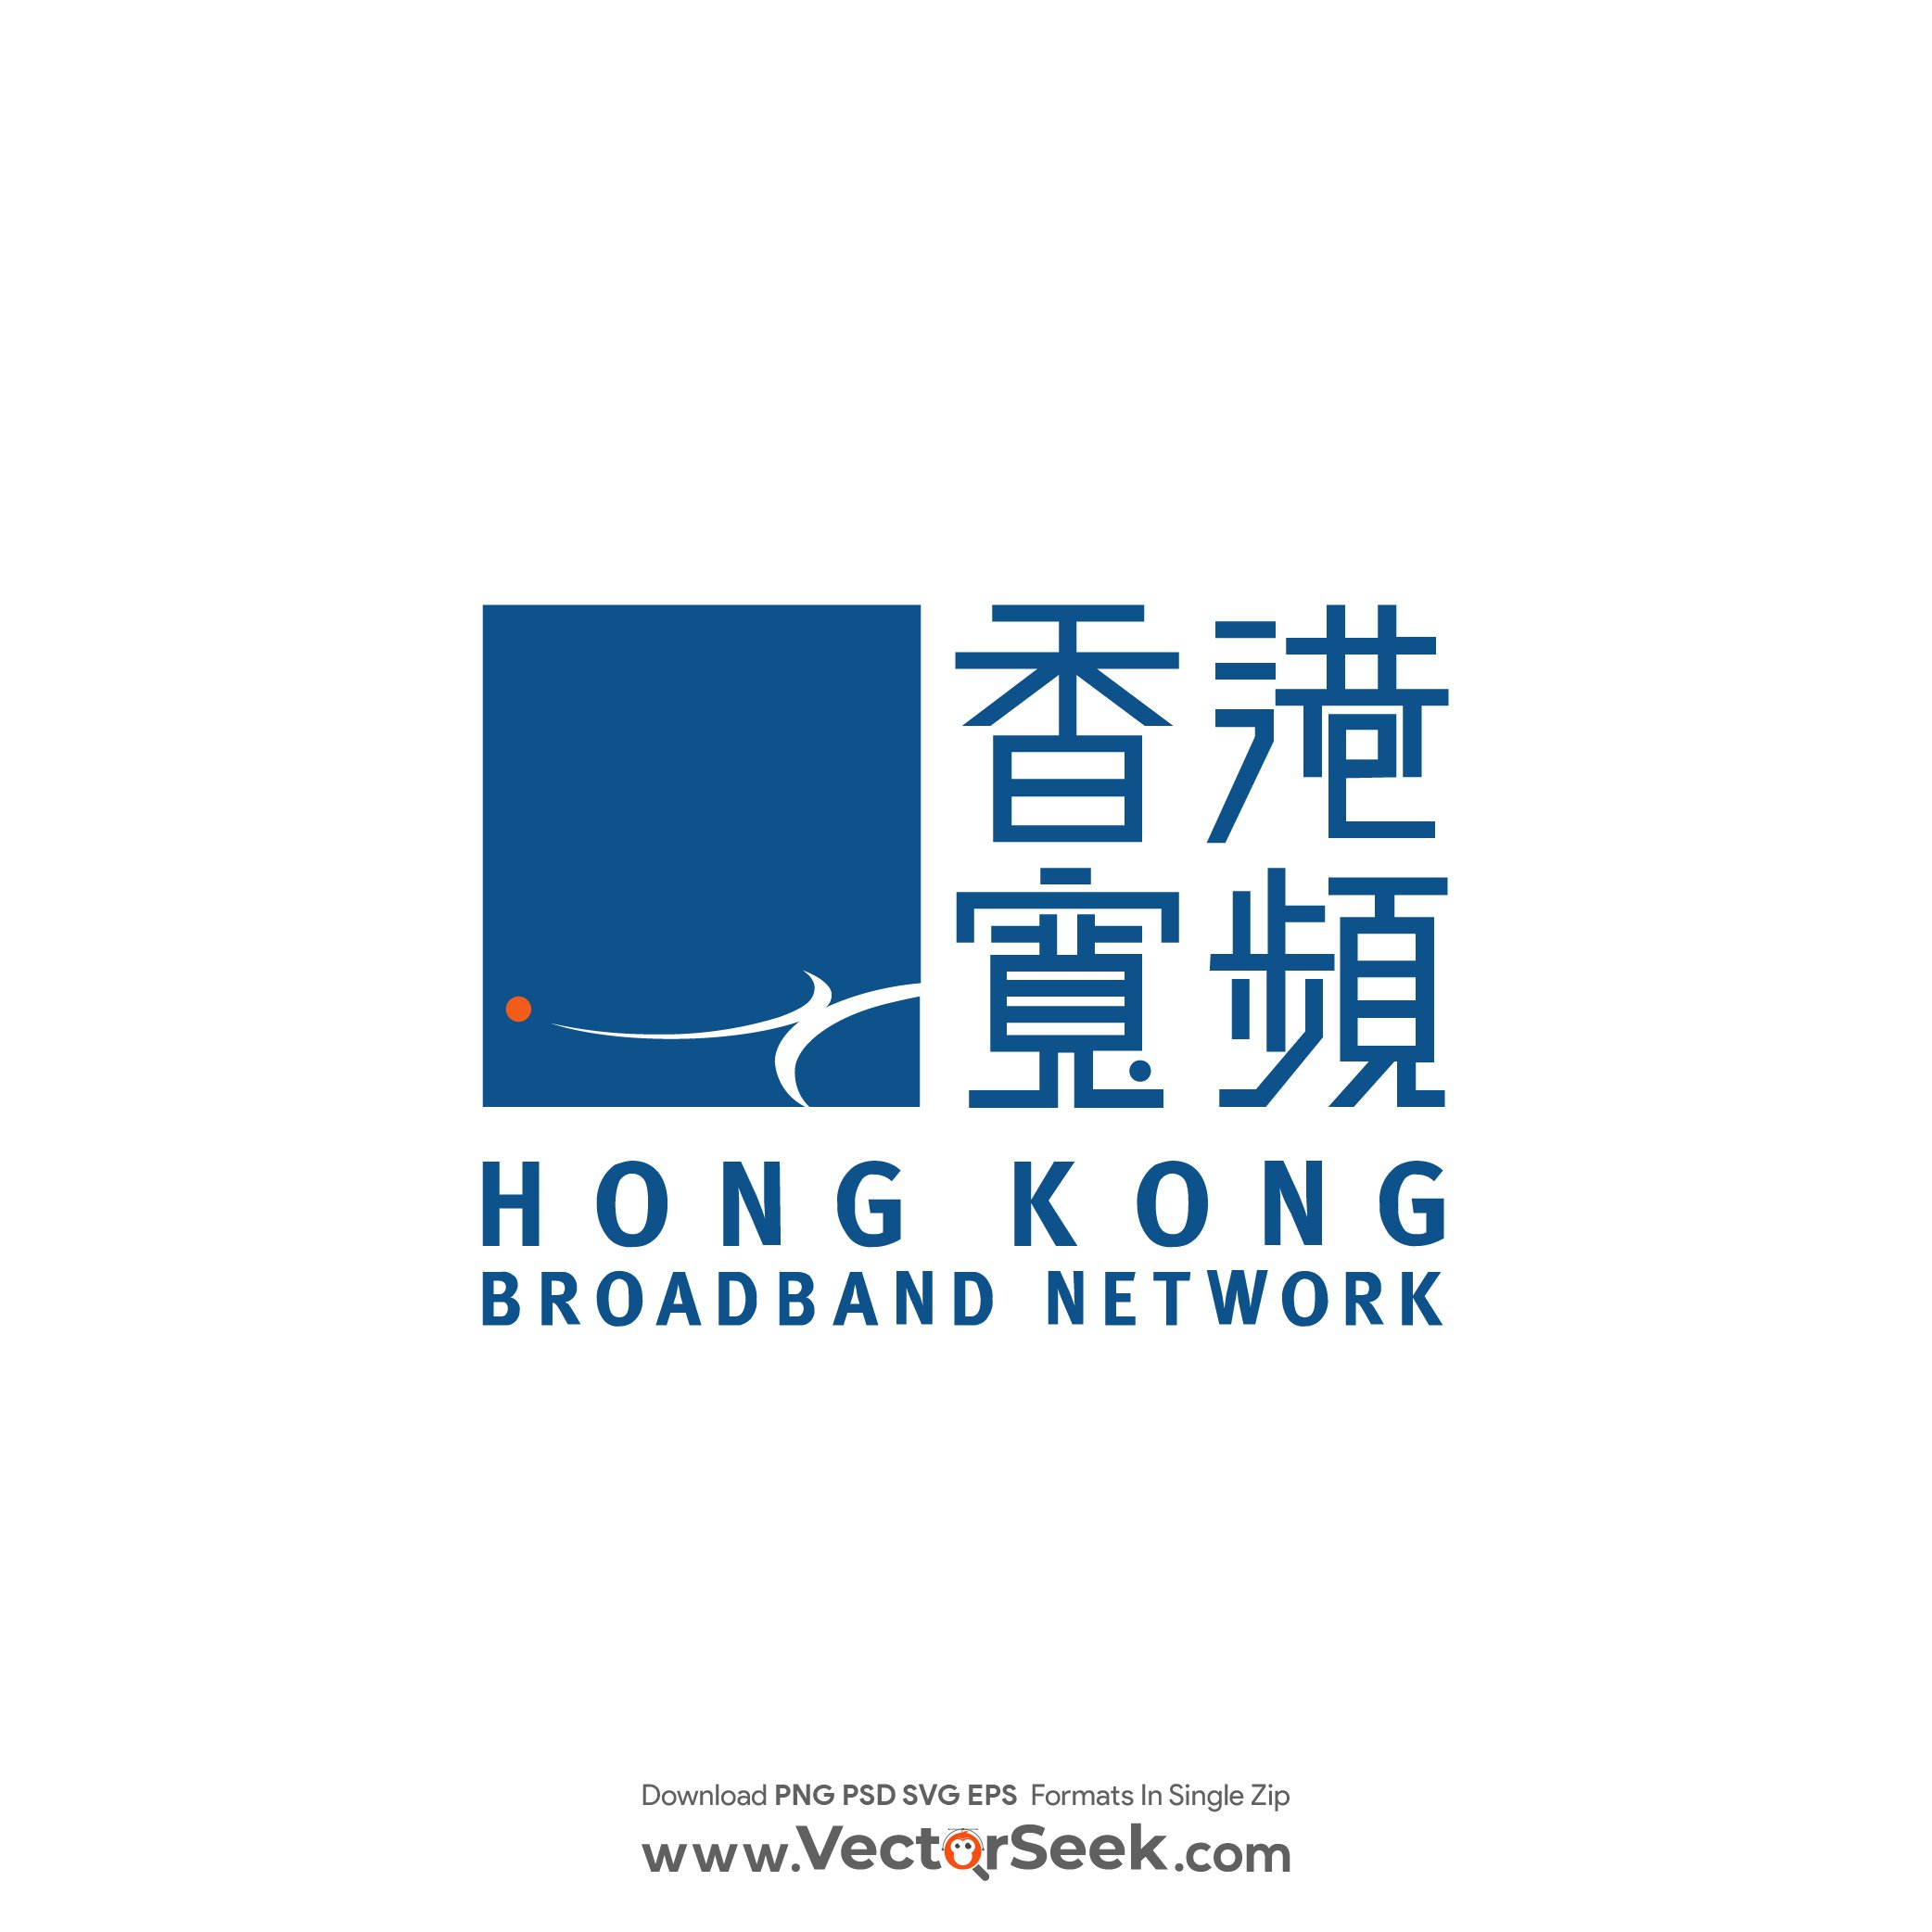 Hong Kong Broadband Network Logo Vector